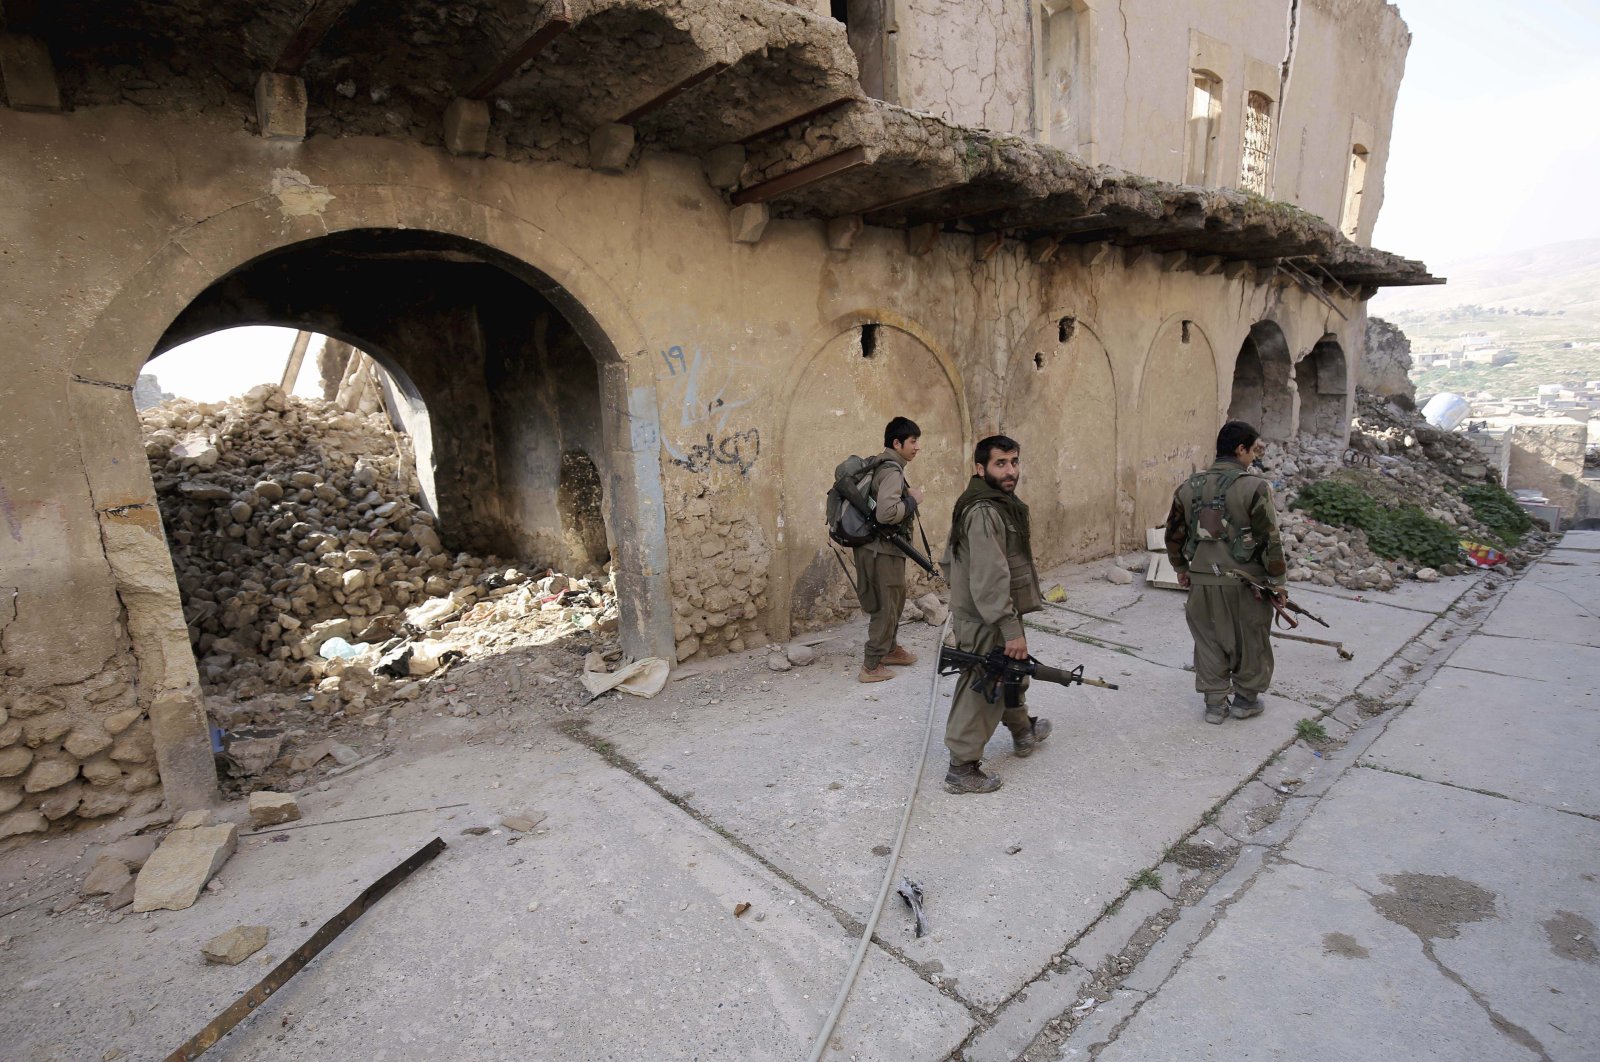 PKK terrorists walk in the damaged streets of Sinjar, Iraq, Jan. 29, 2015. (AP File Photo)